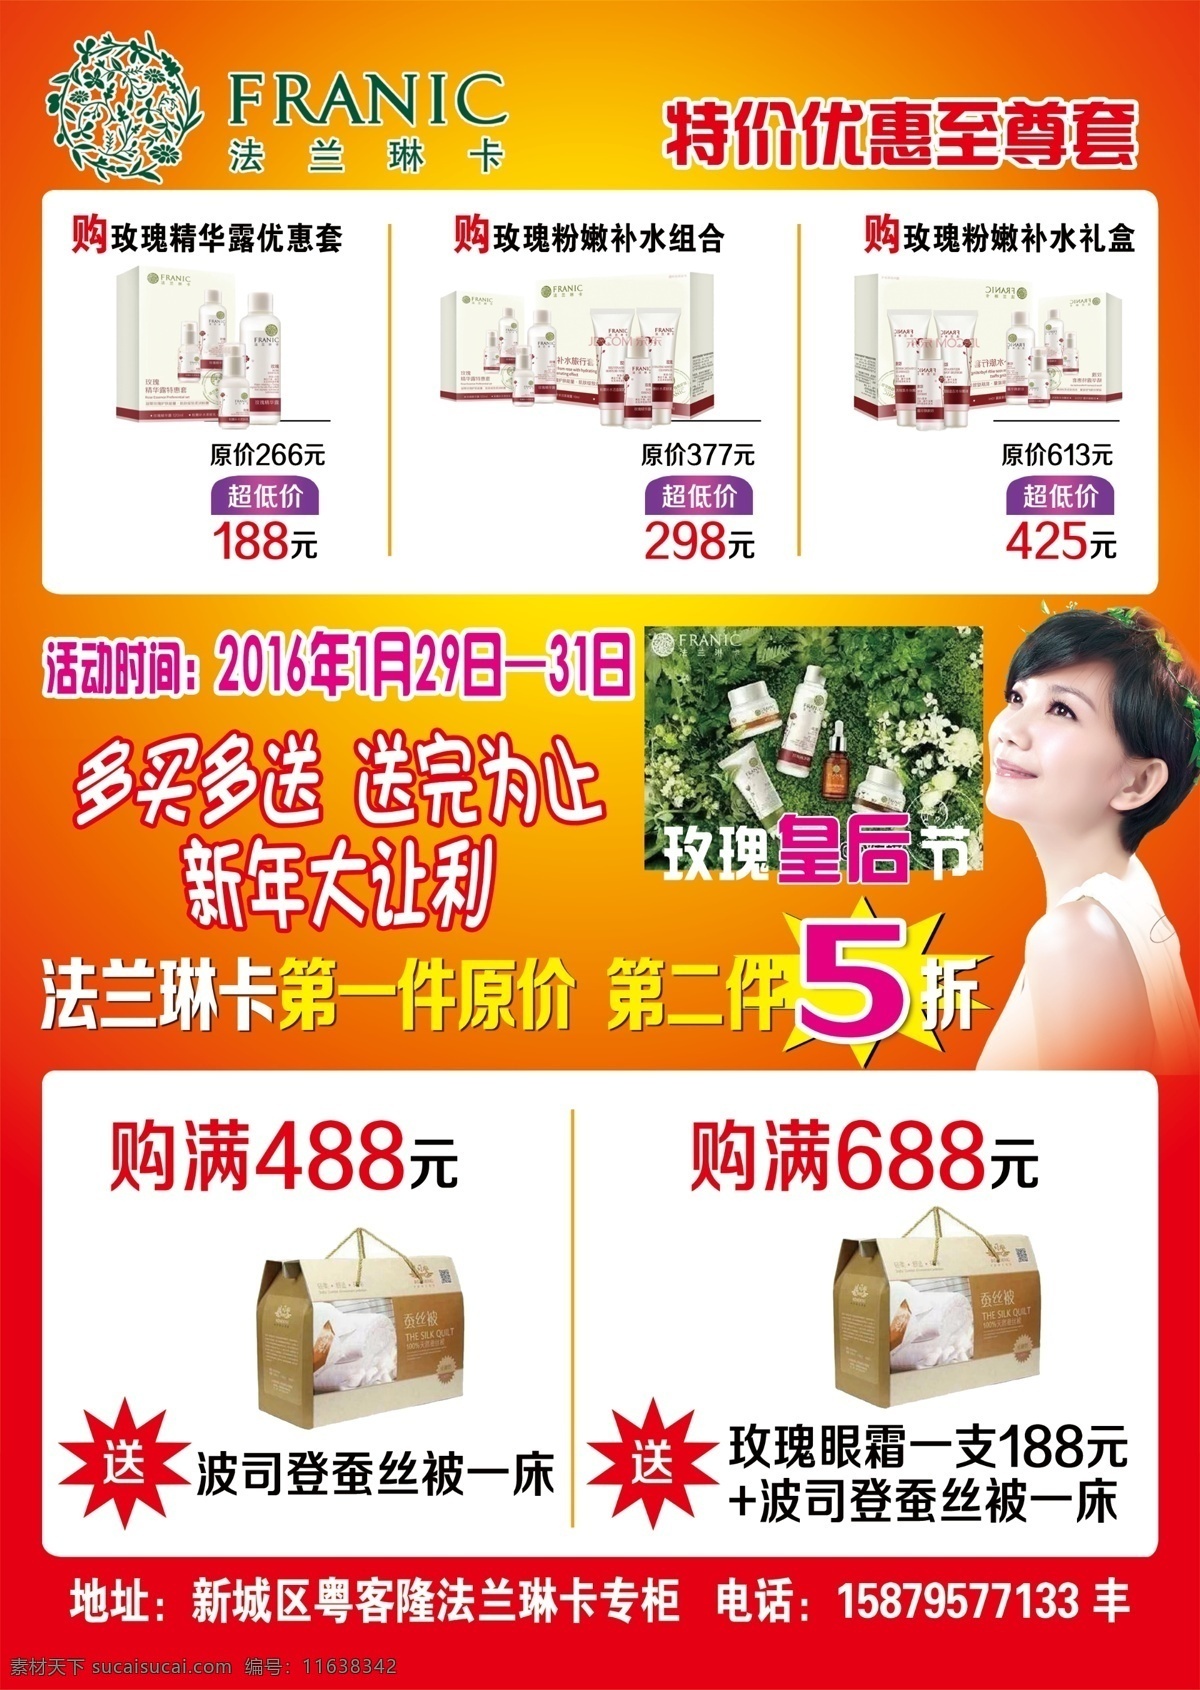 法兰琳卡宣单 法兰琳 宣传单 dm单 特价优惠 多买多送 化妆品海报 dm宣传单